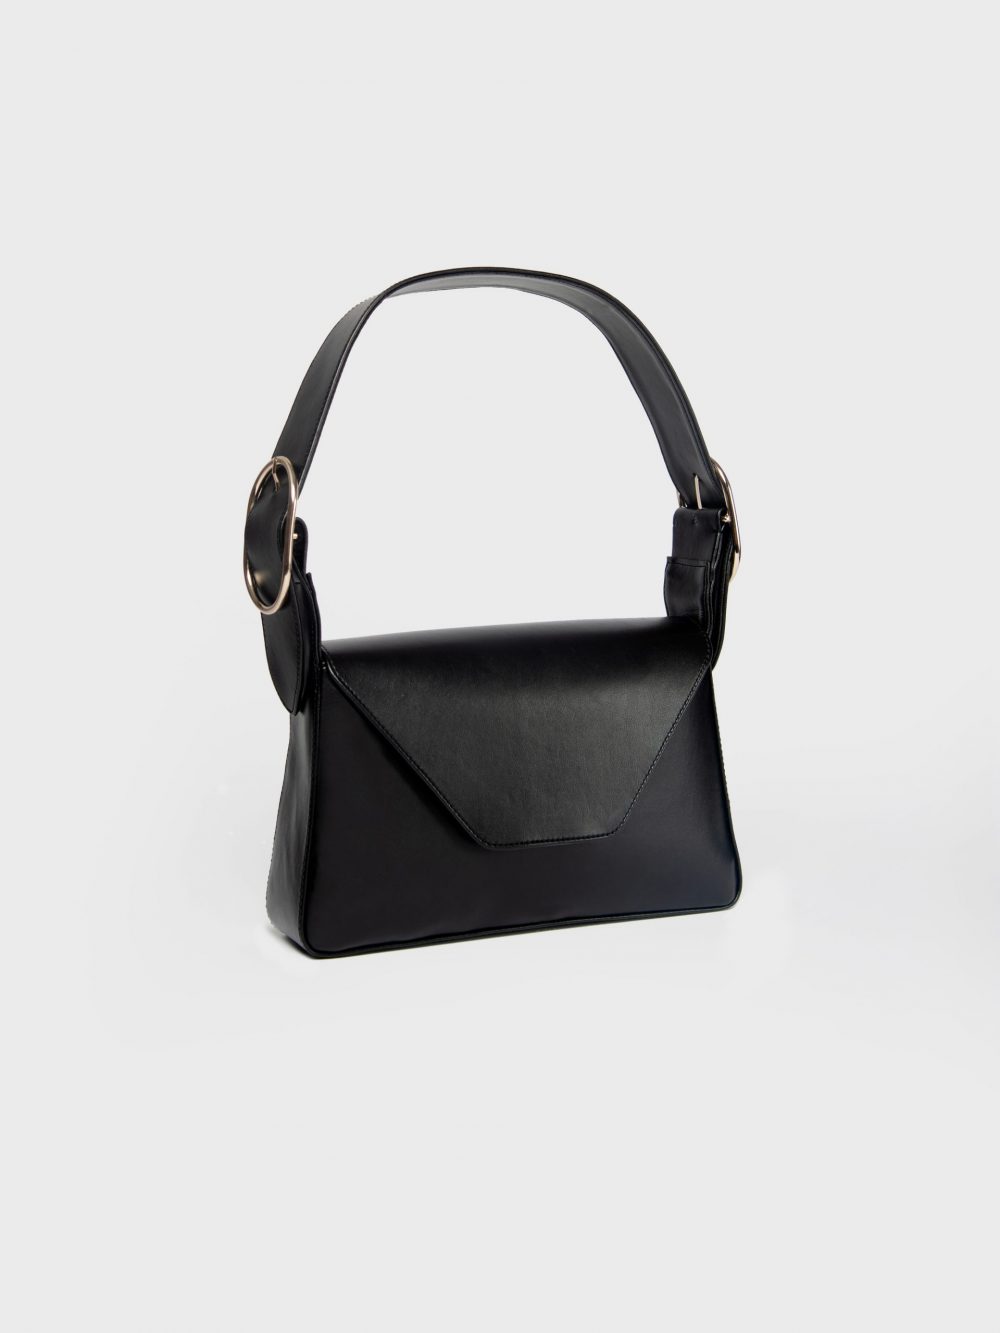 Le poche 01 the daily bag black in three-quarter view